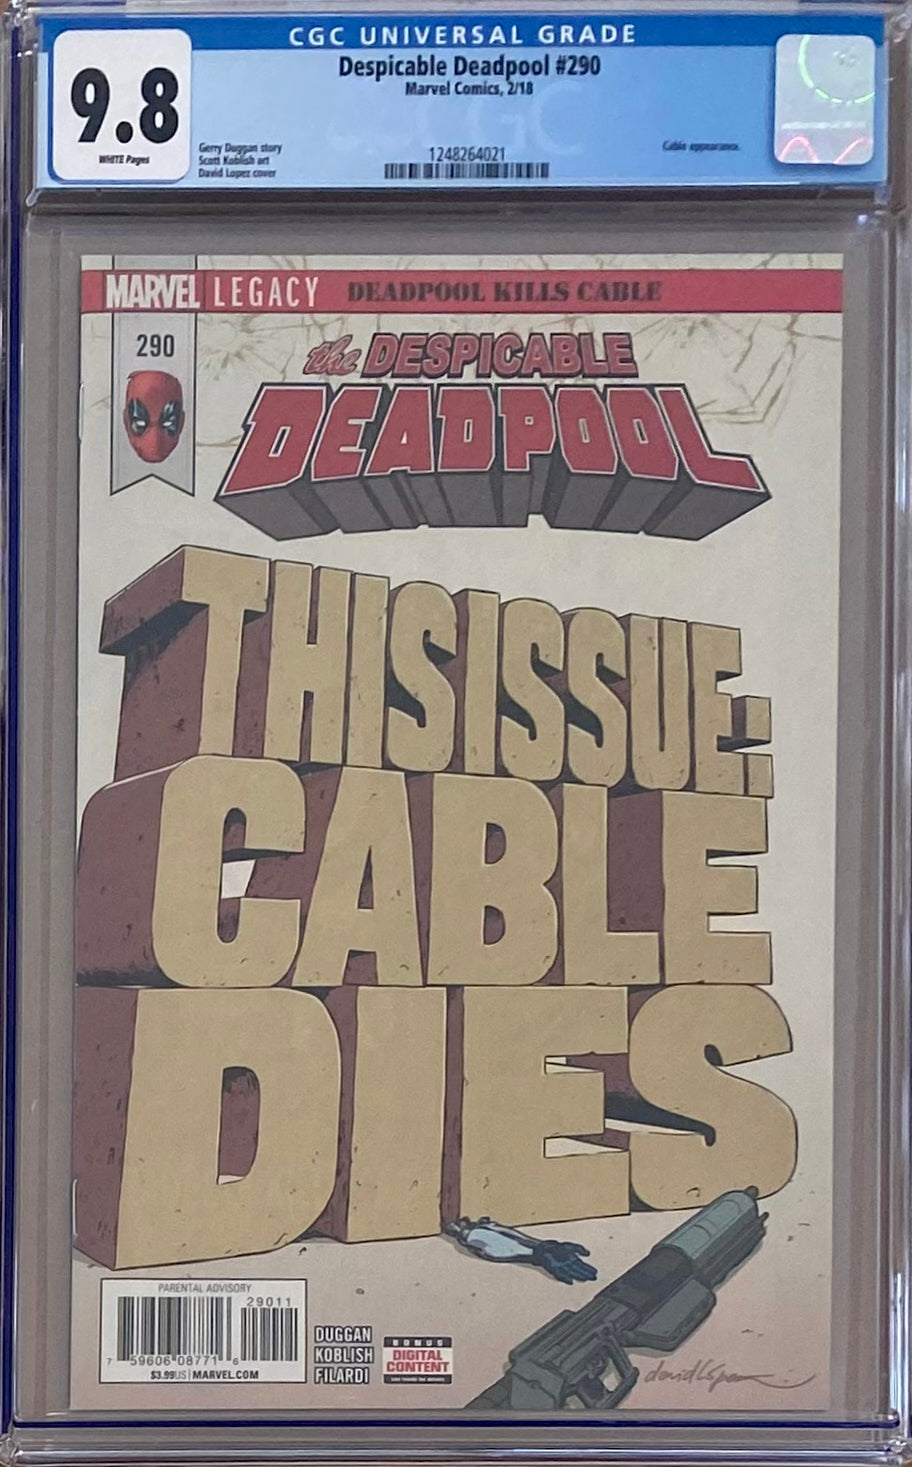 Despicable Deadpool #290 CGC 9.8